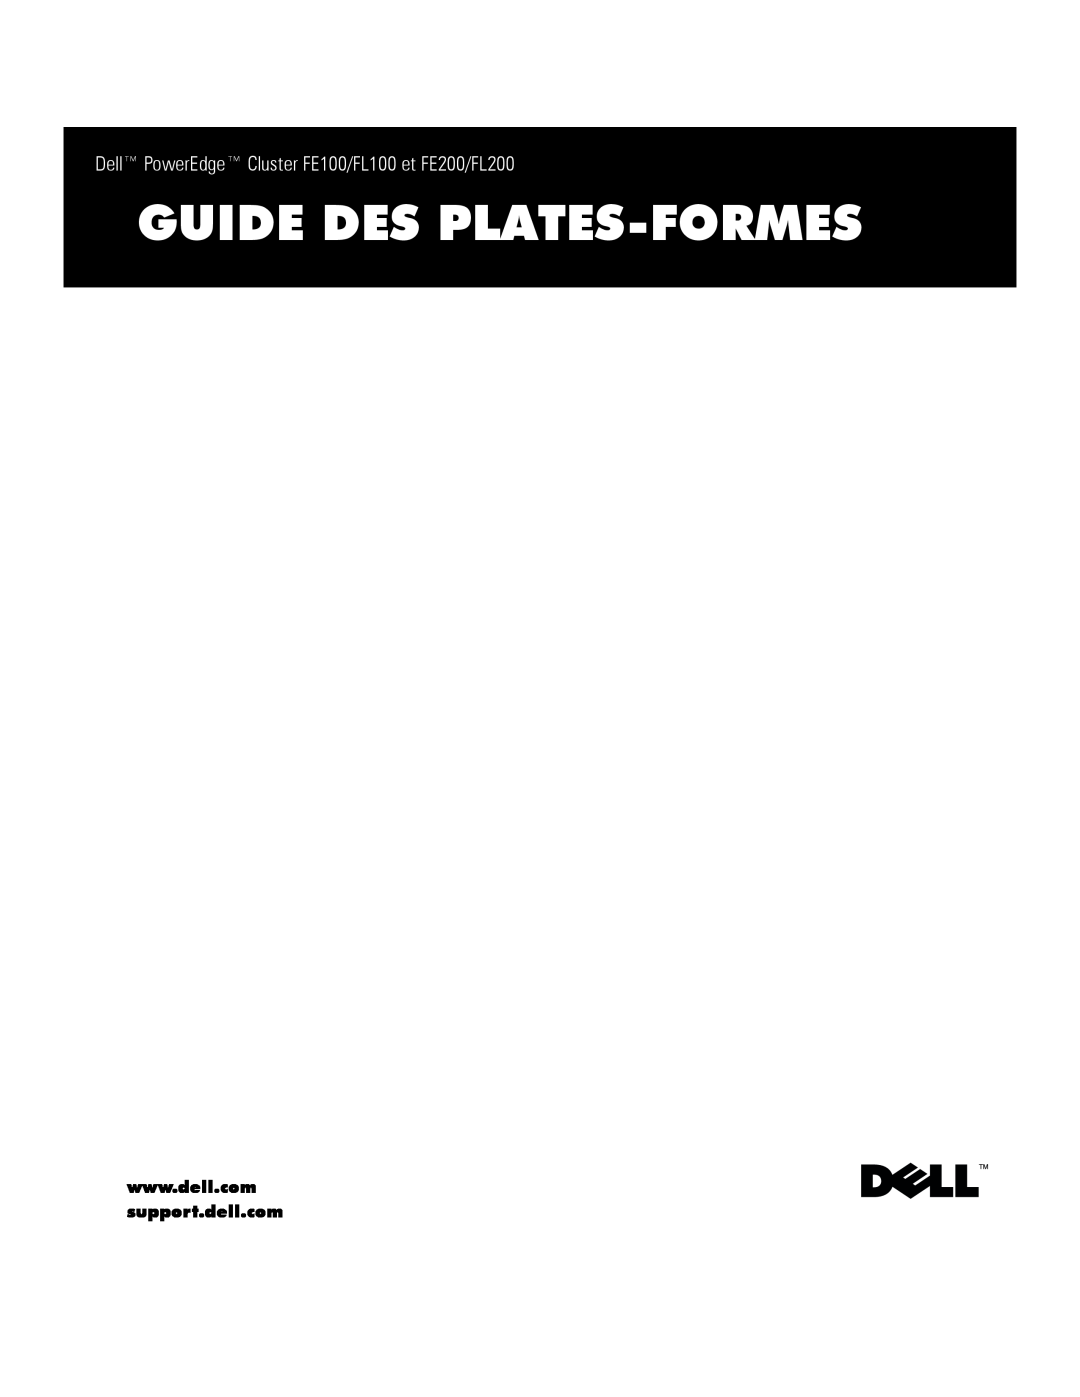 Dell manual Guide Des Plates-Formes, Dell PowerEdge Cluster FE100/FL100 et FE200/FL200 